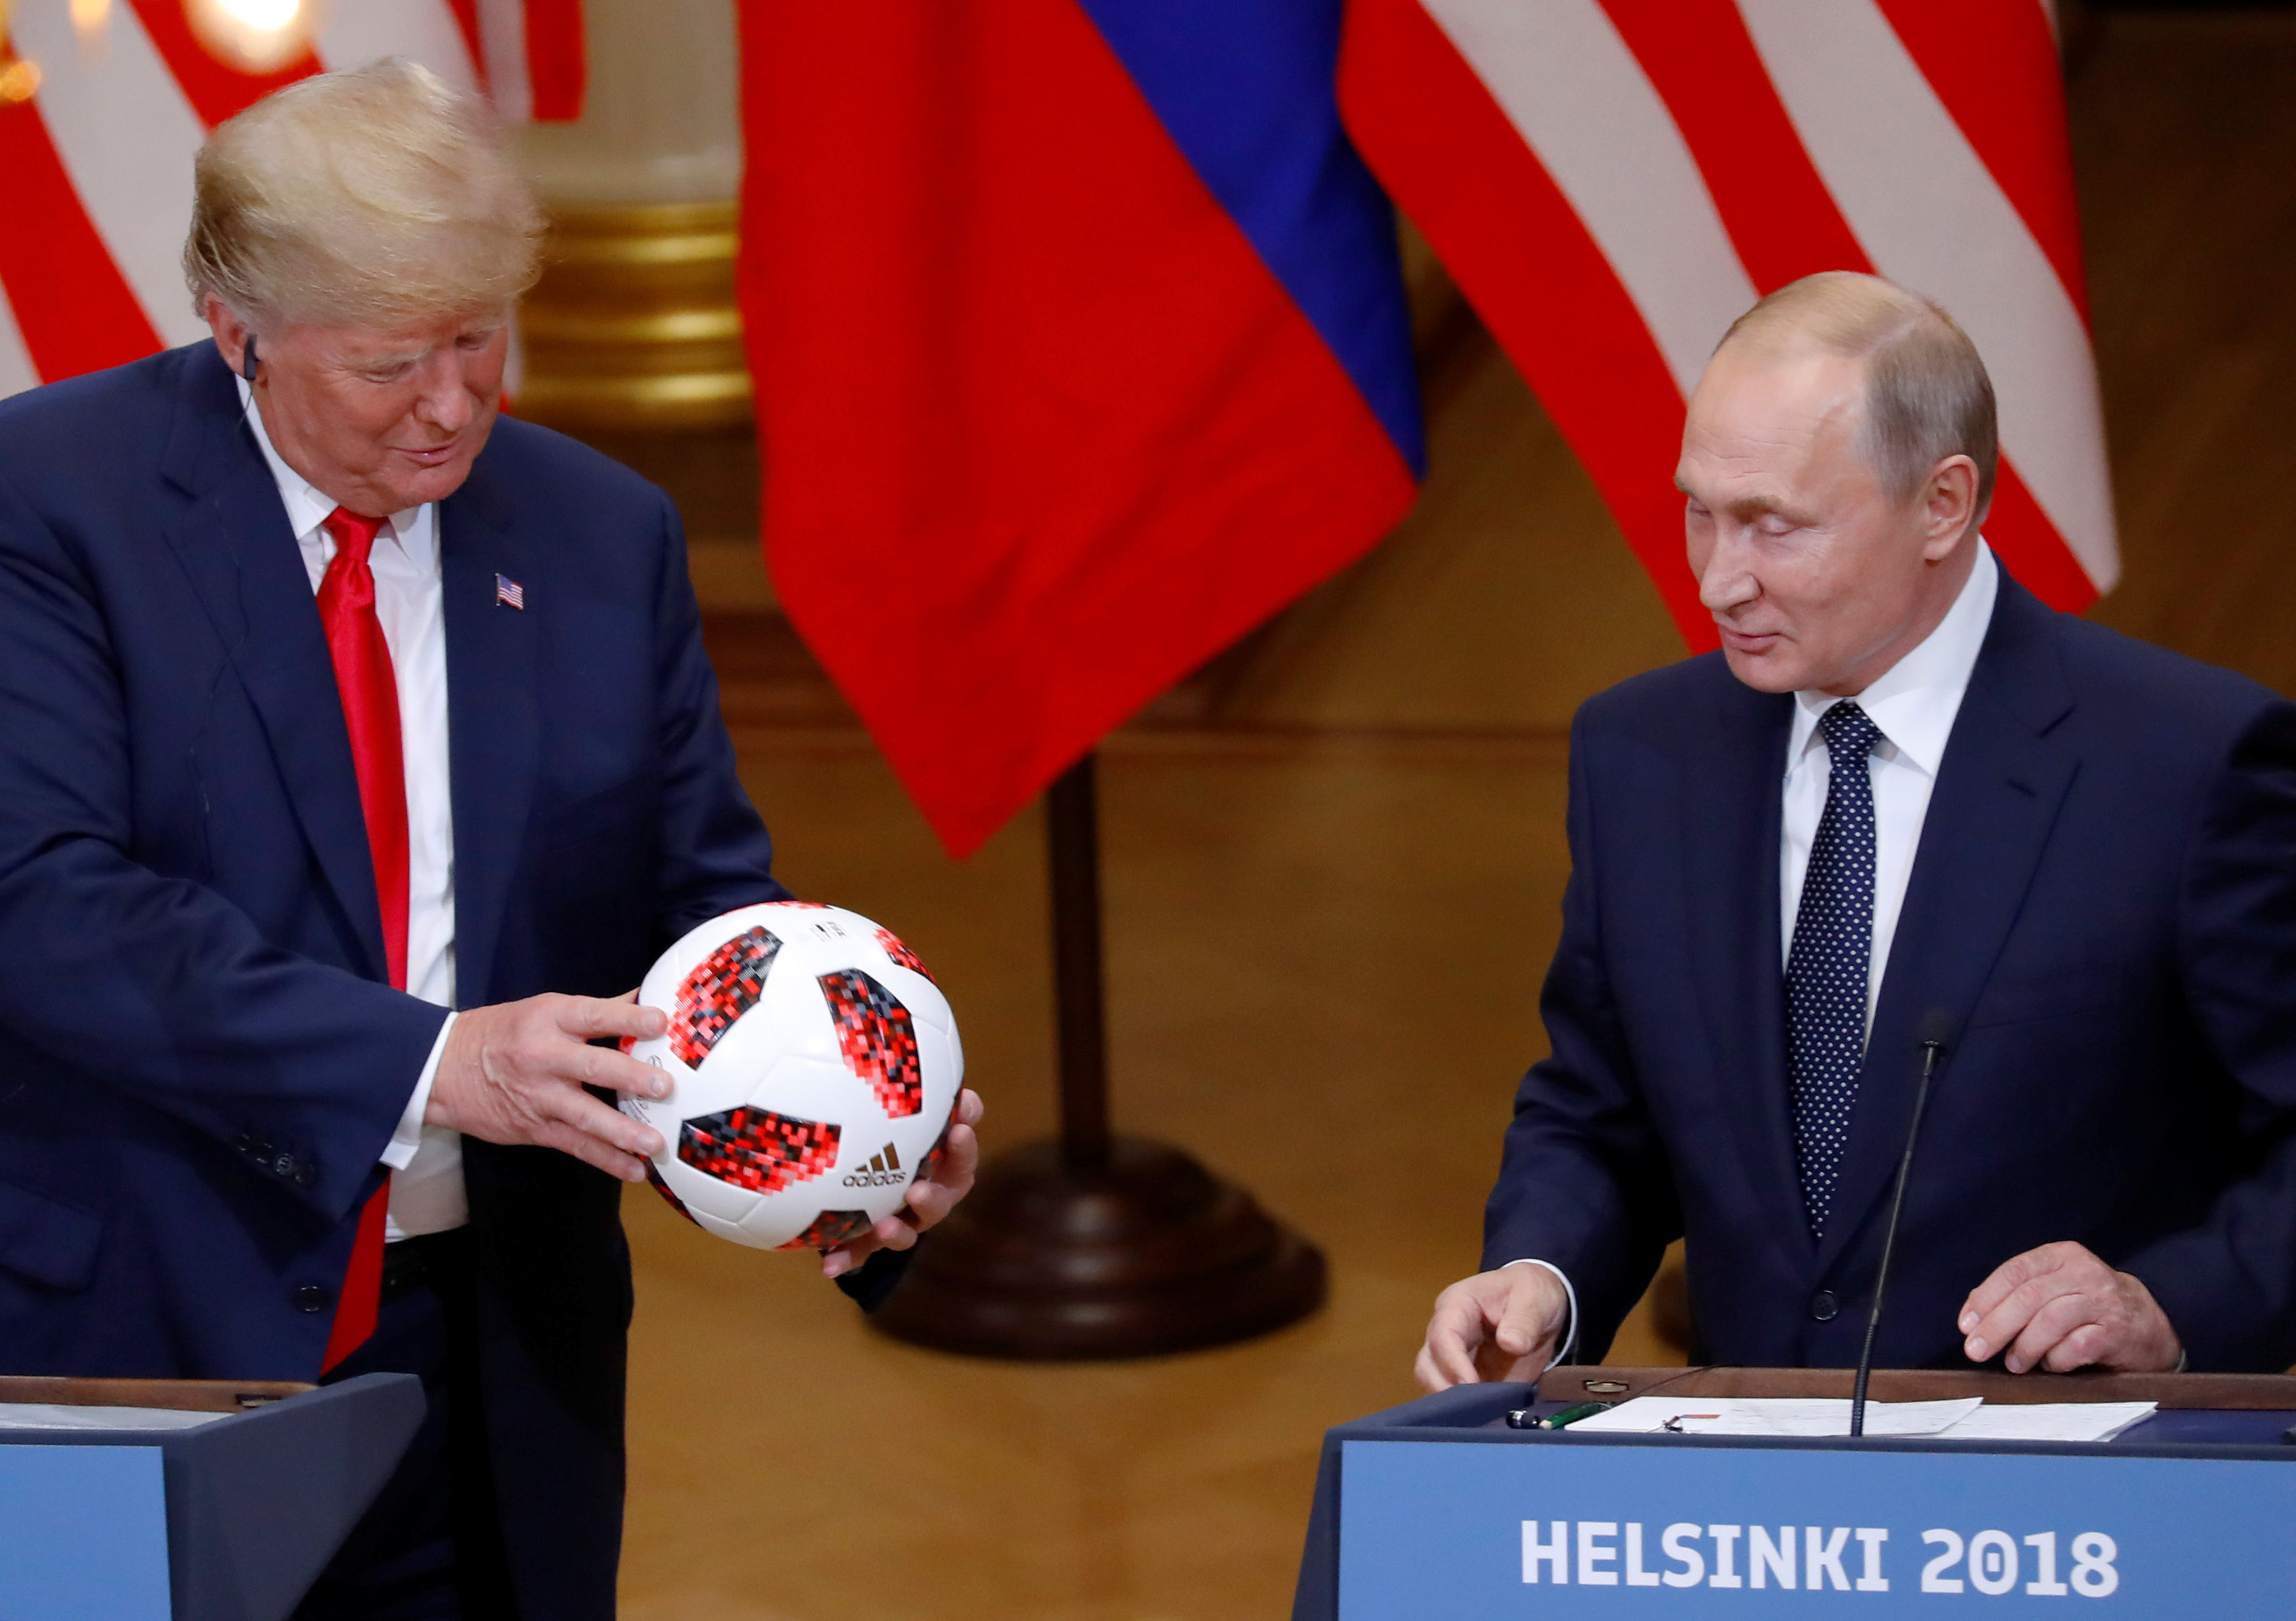 بوتين يهدة كرة قدم اترامب